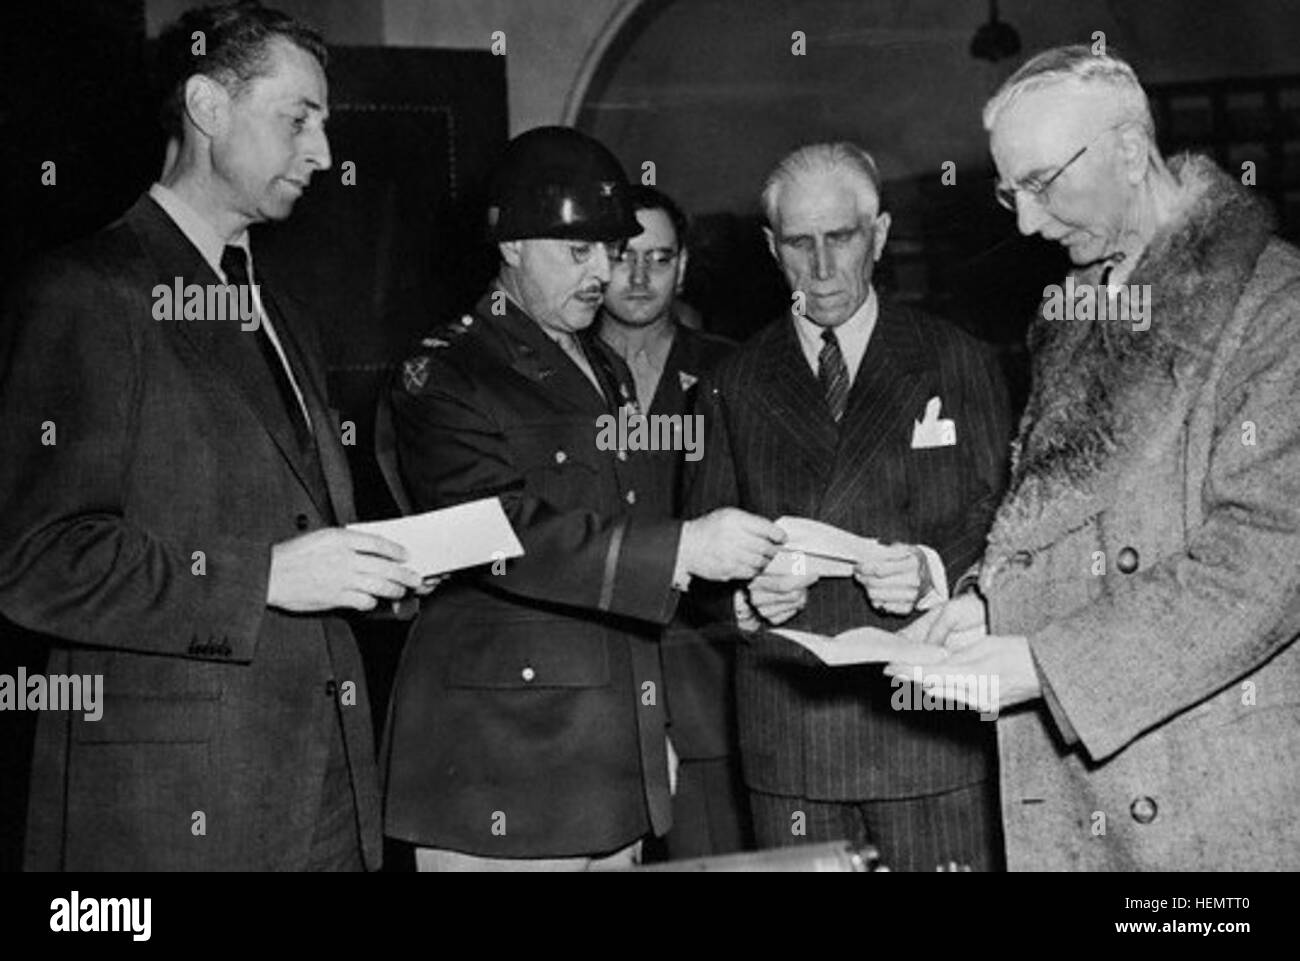 04 Oct 1946, Nuerenberg, Allemagne --- Le Colonel D. C. Andrus, l'ARMÉE  AMÉRICAINE, présente ici des lettres certifiant la liberté de Hans  Fritsche, (L), Franz Von Papen, (deuxième forme droite), et Hjalmar